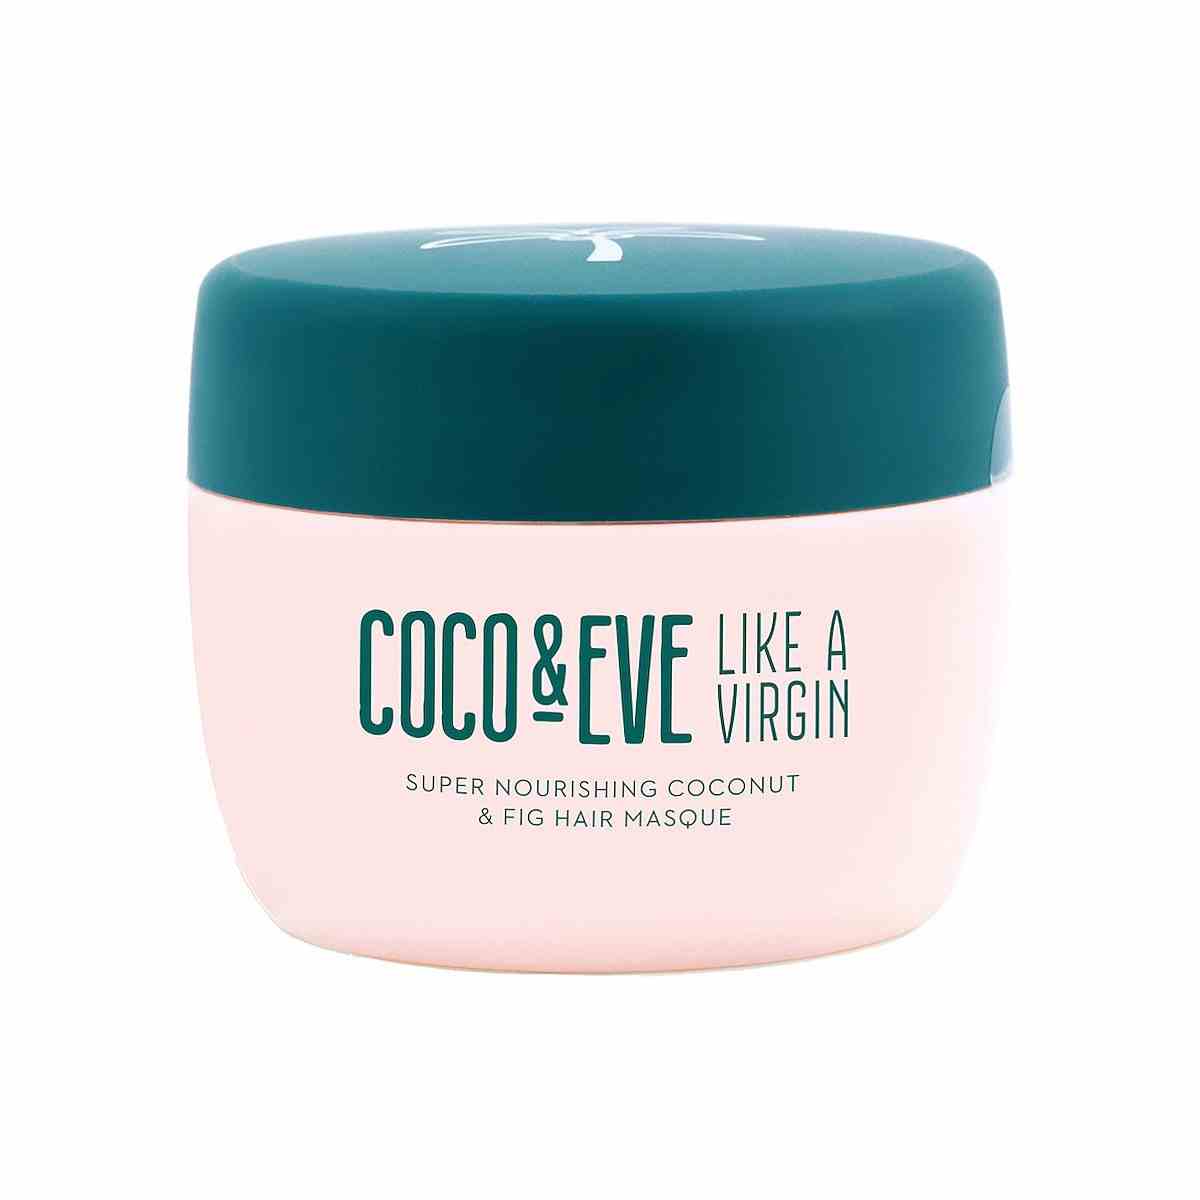 Coco & Eve Like A Virgin Hair Masque blassrosa Glas mit türkisfarbenem Deckel auf weißem Hintergrund